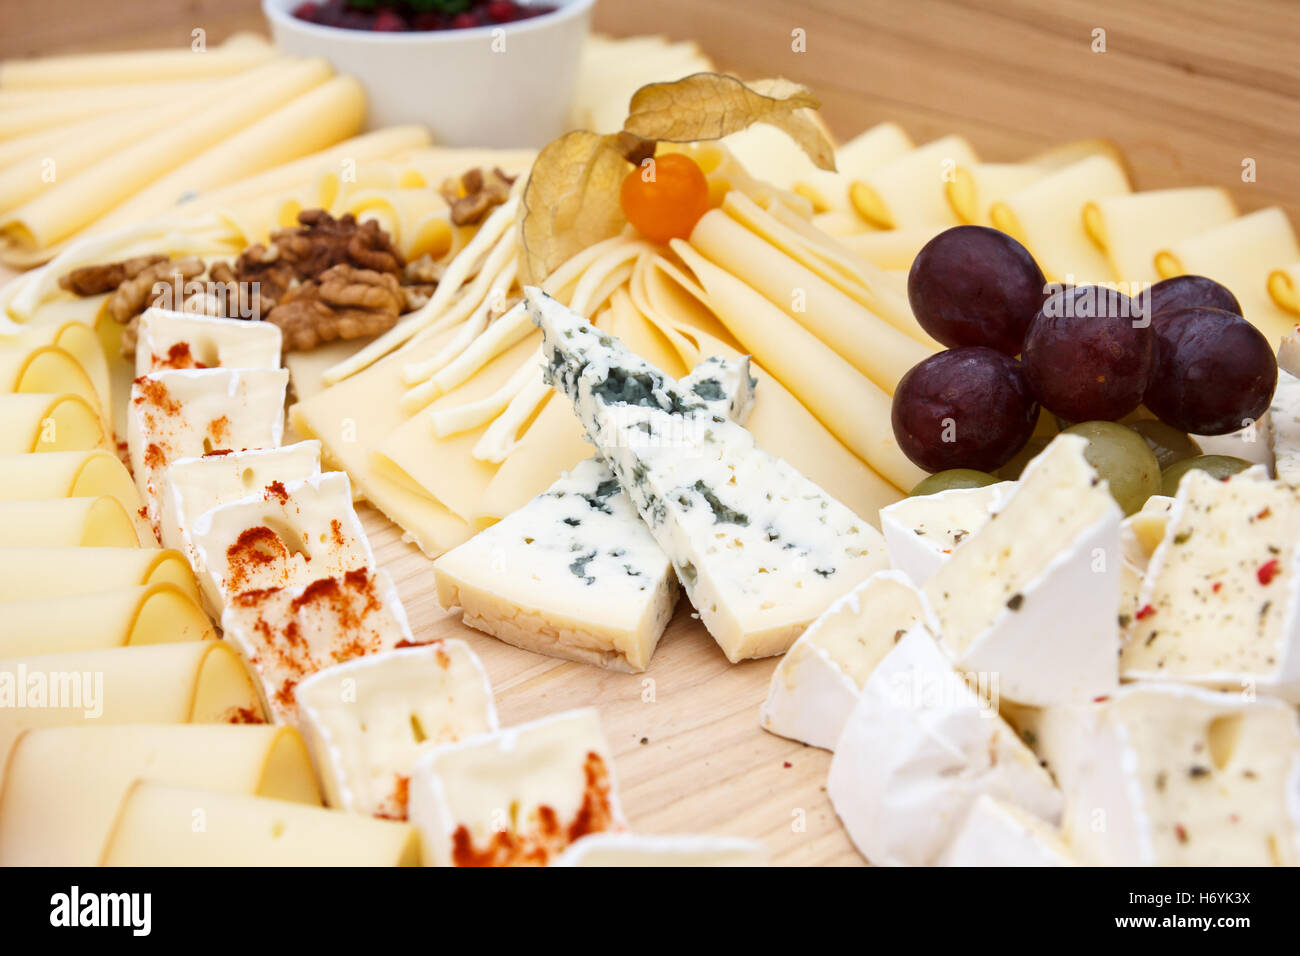 Tabla de quesos mixtos fotografías e imágenes de alta resolución - Alamy